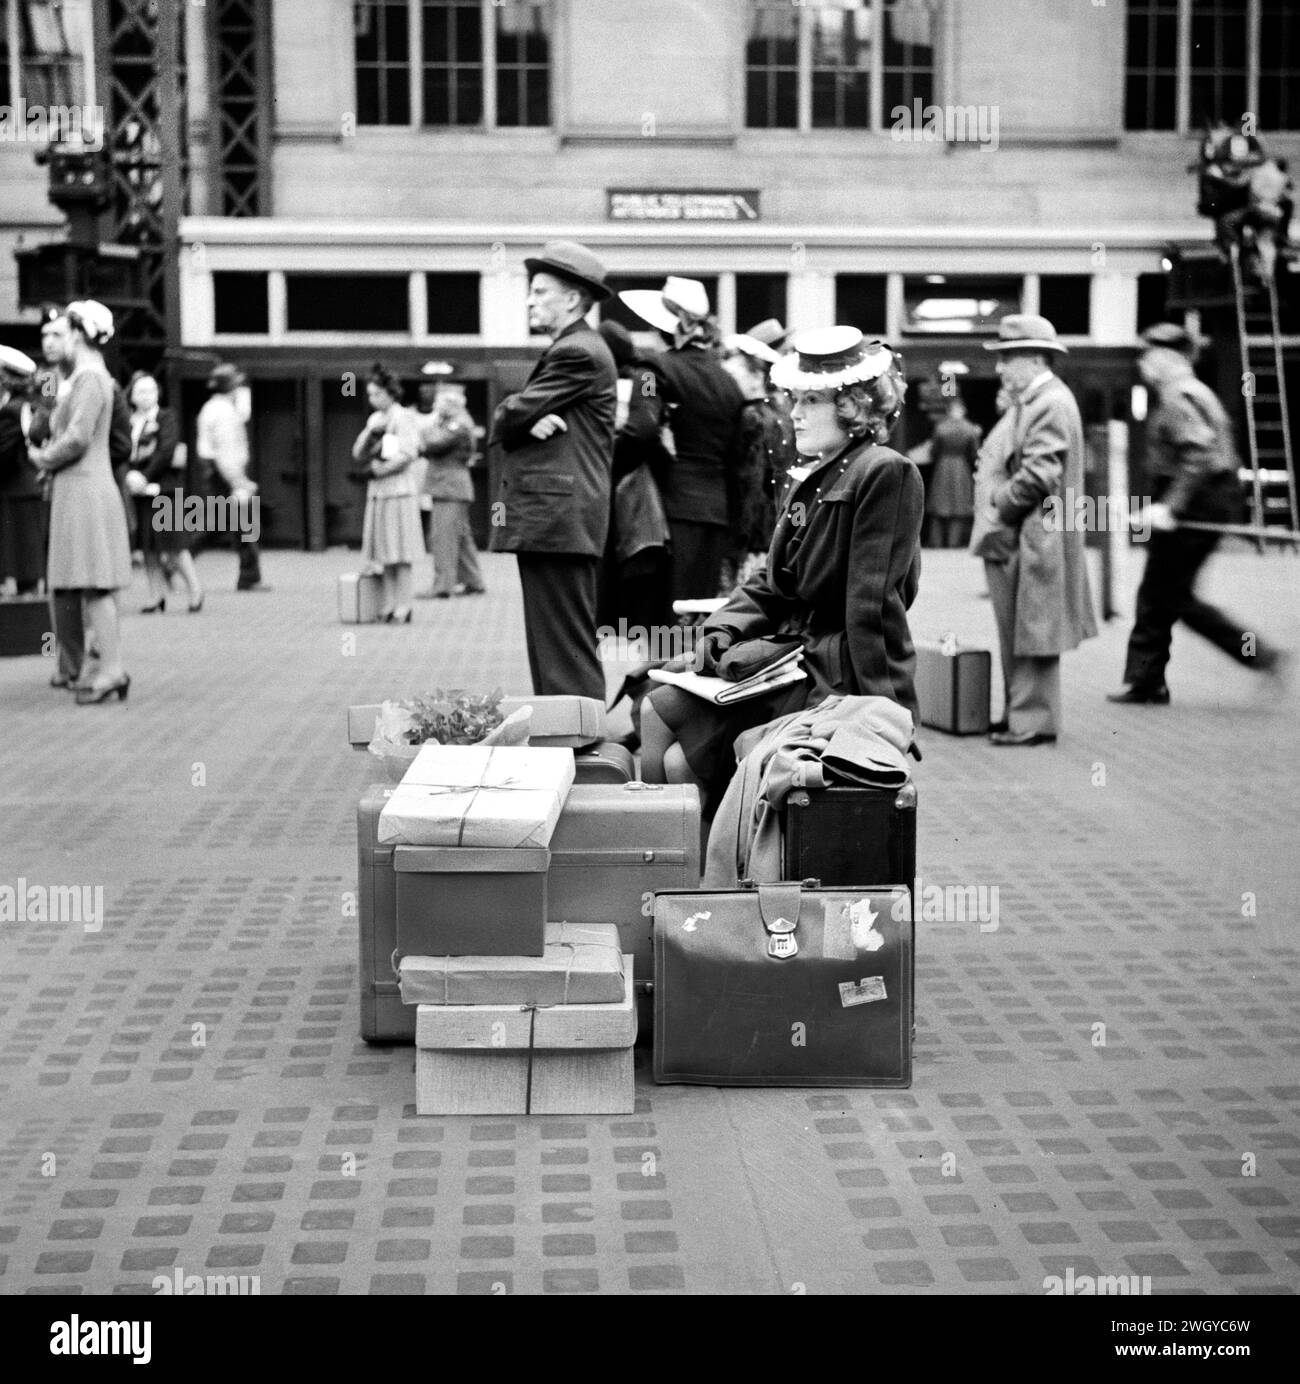 Donna seduta sui bagagli in attesa del treno, Pennsylvania Station, New York City, New York, USA, Gordon Parks, U.S. Office of War Information, giugno 1943 Foto Stock